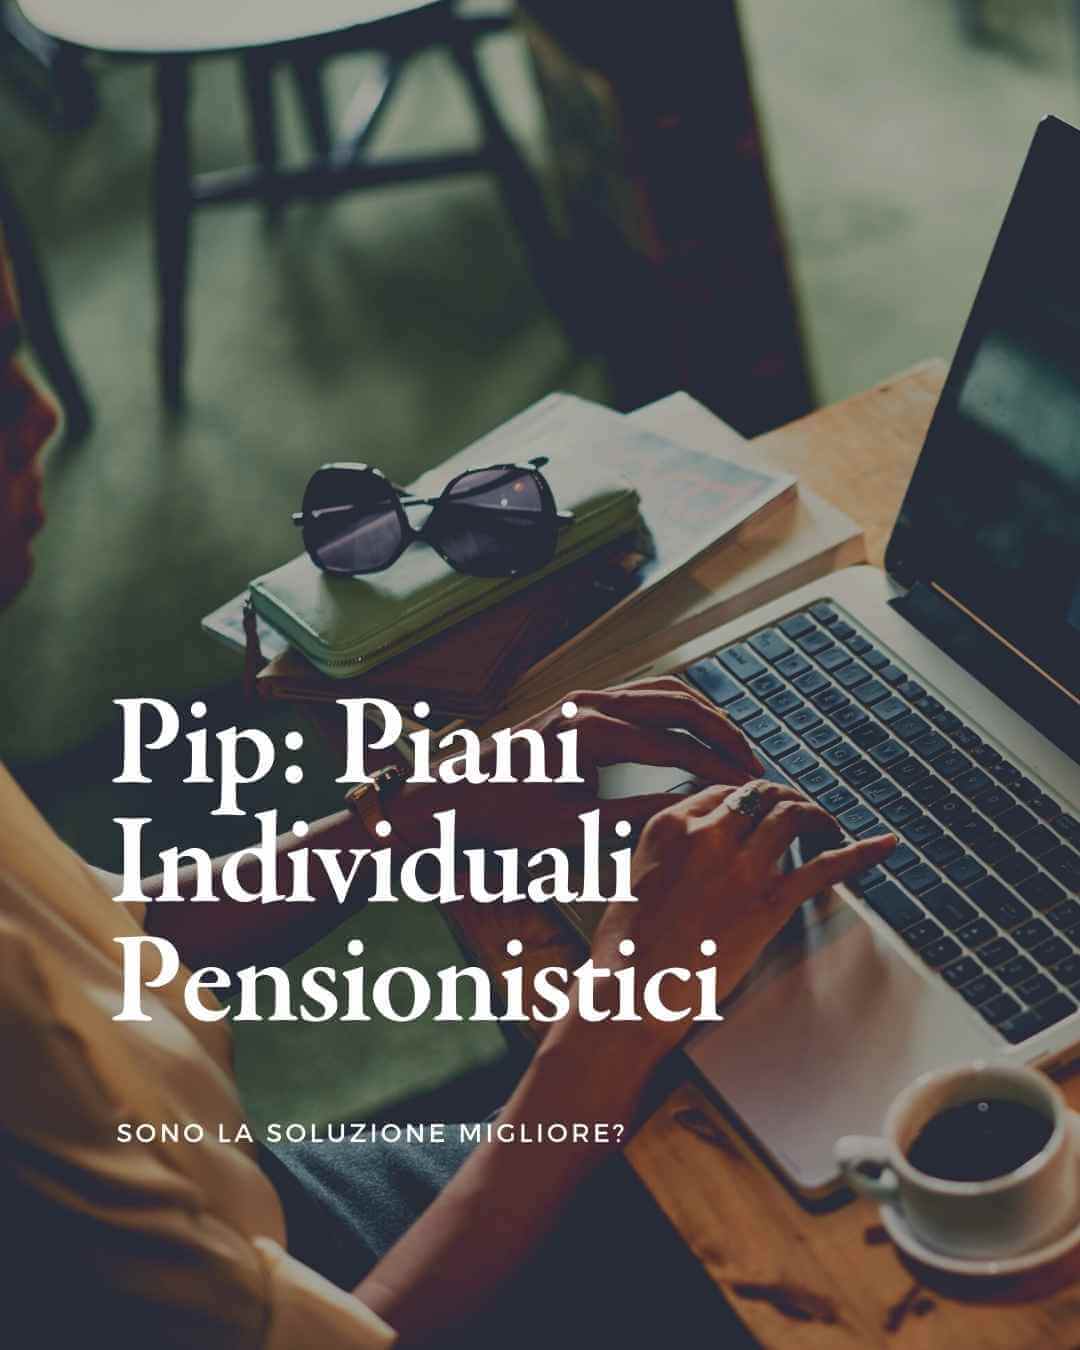 I Piani individuali pensionistici (PIP): cosa sono